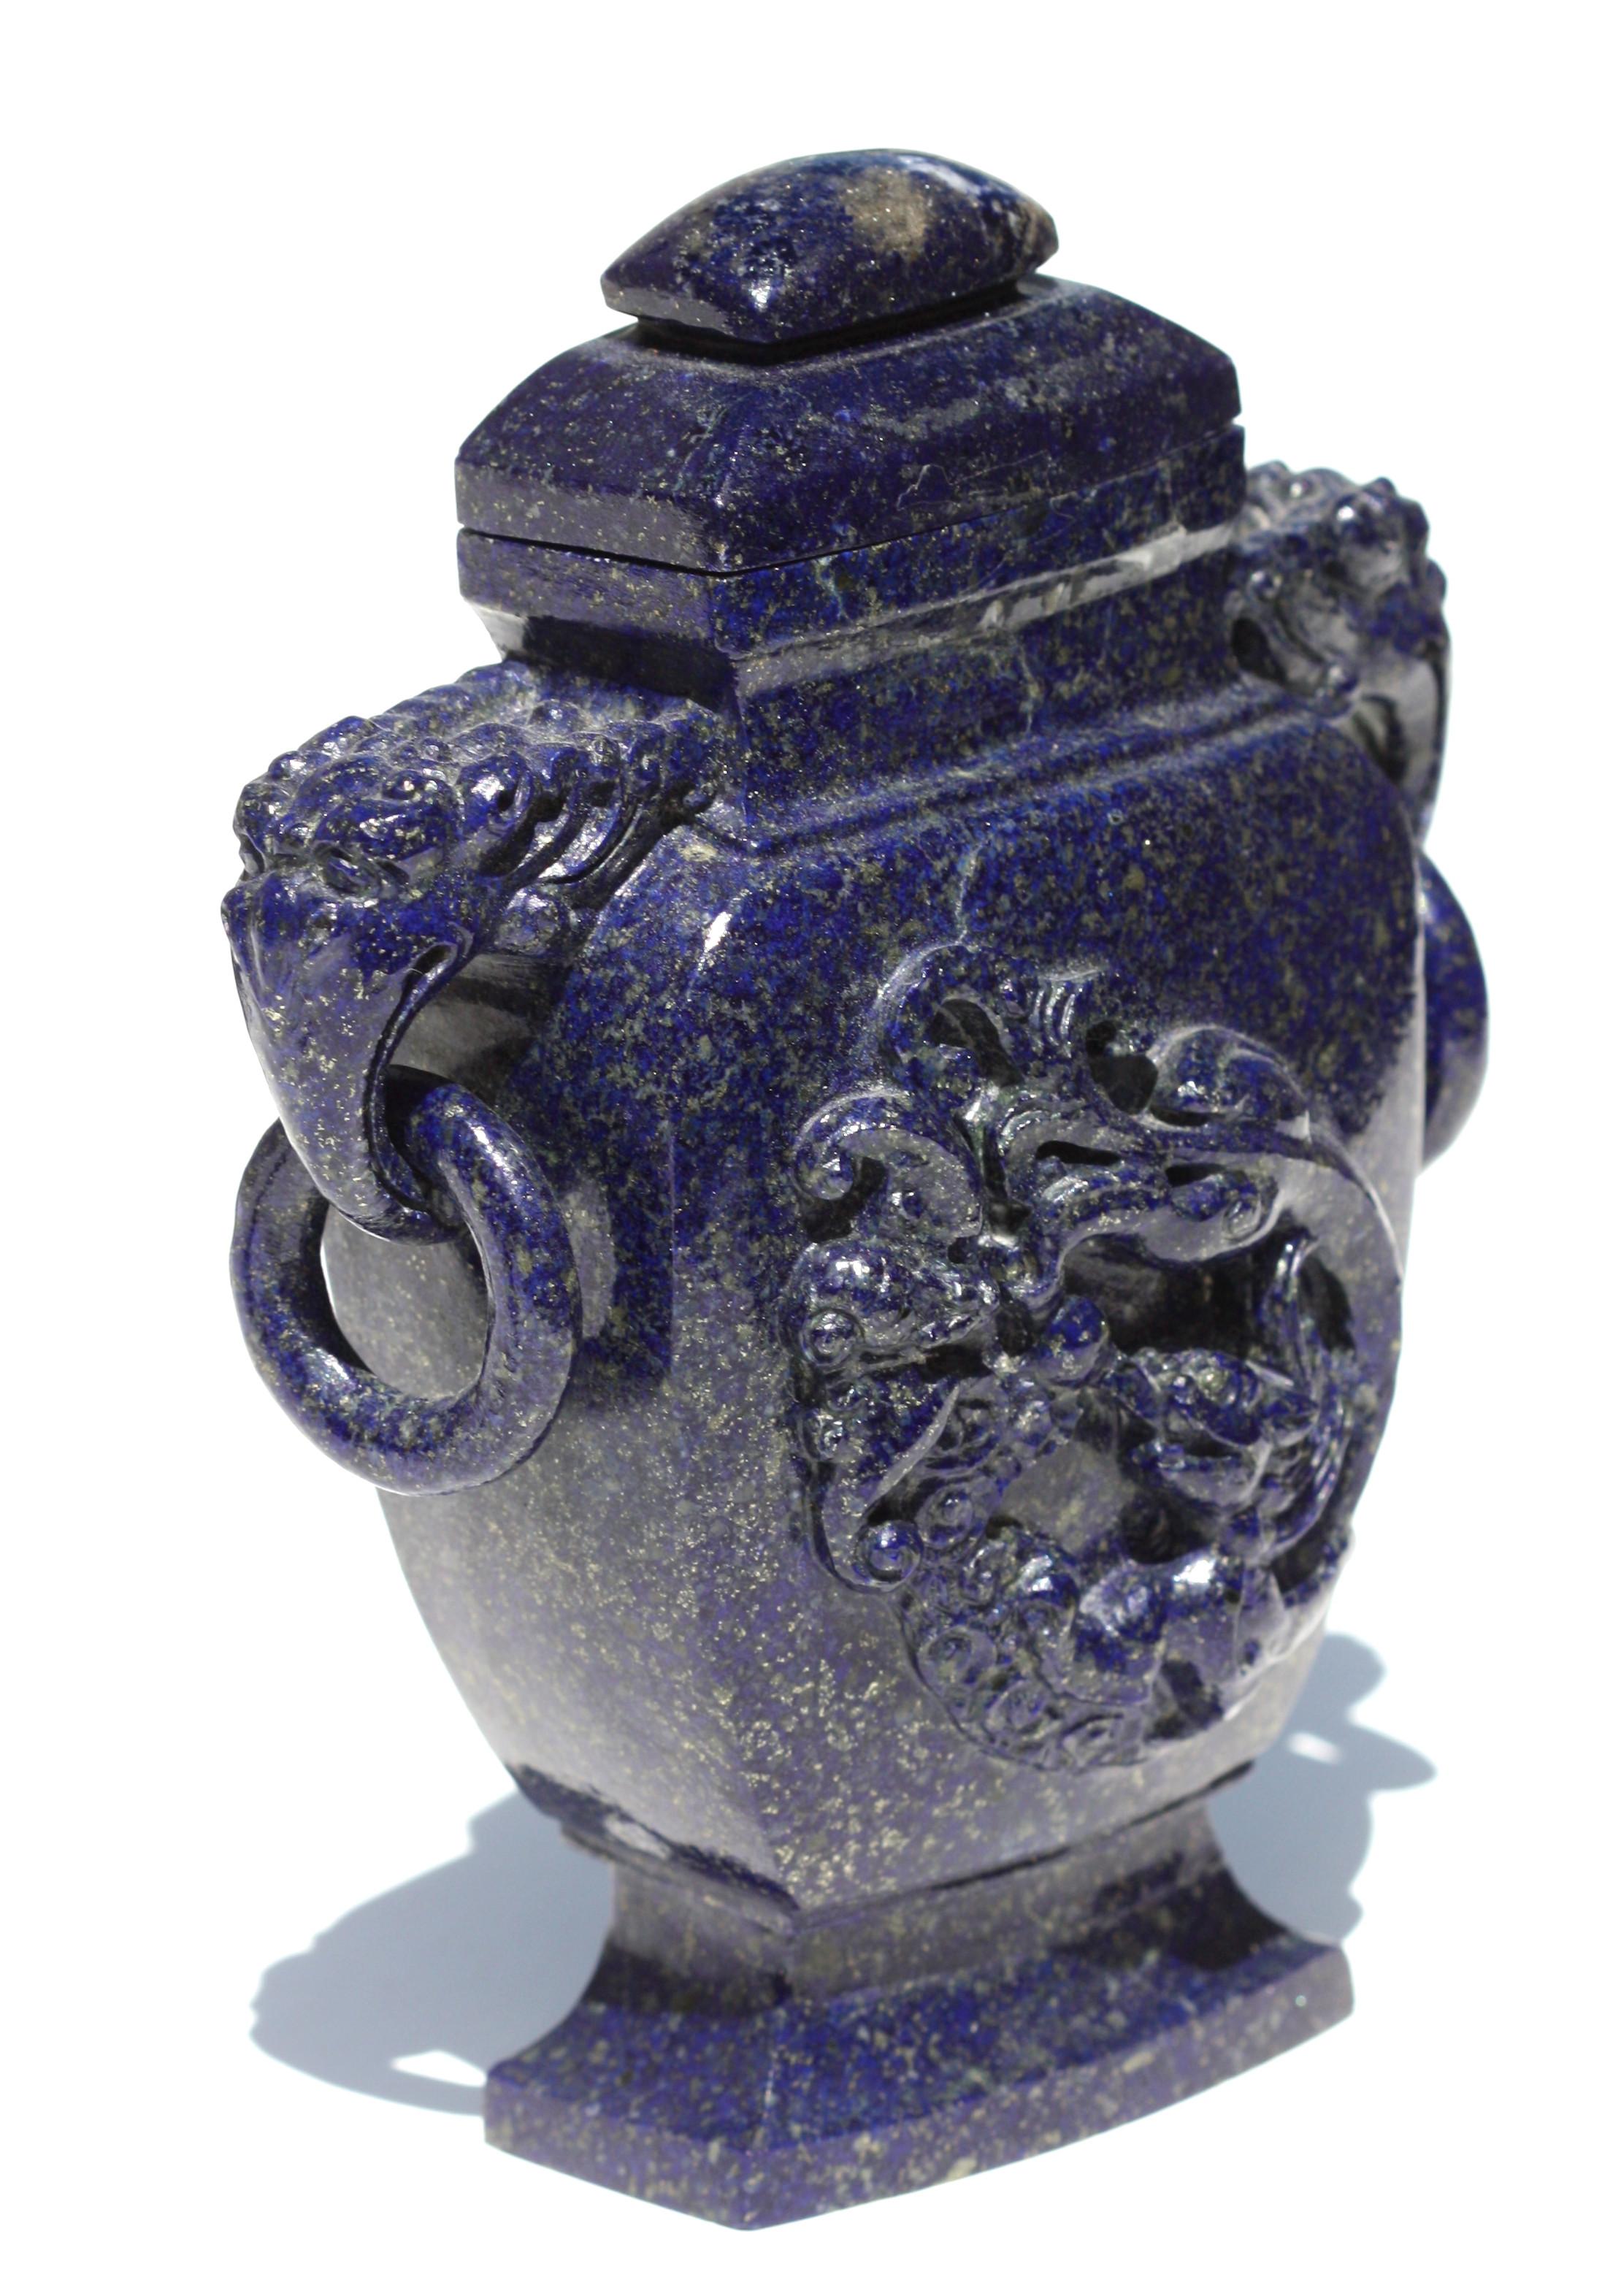 Chinesische geschnitzte Lapislazuli-Vase mit Deckel, 19./20. Jahrhundert,
flankiert von Henkeln mit Elefantenköpfen, die lose Ringe tragen, auf der einen Seite mit einem tief geschnitzten Drachen, auf der anderen Seite ungeschnitzt, auf einem